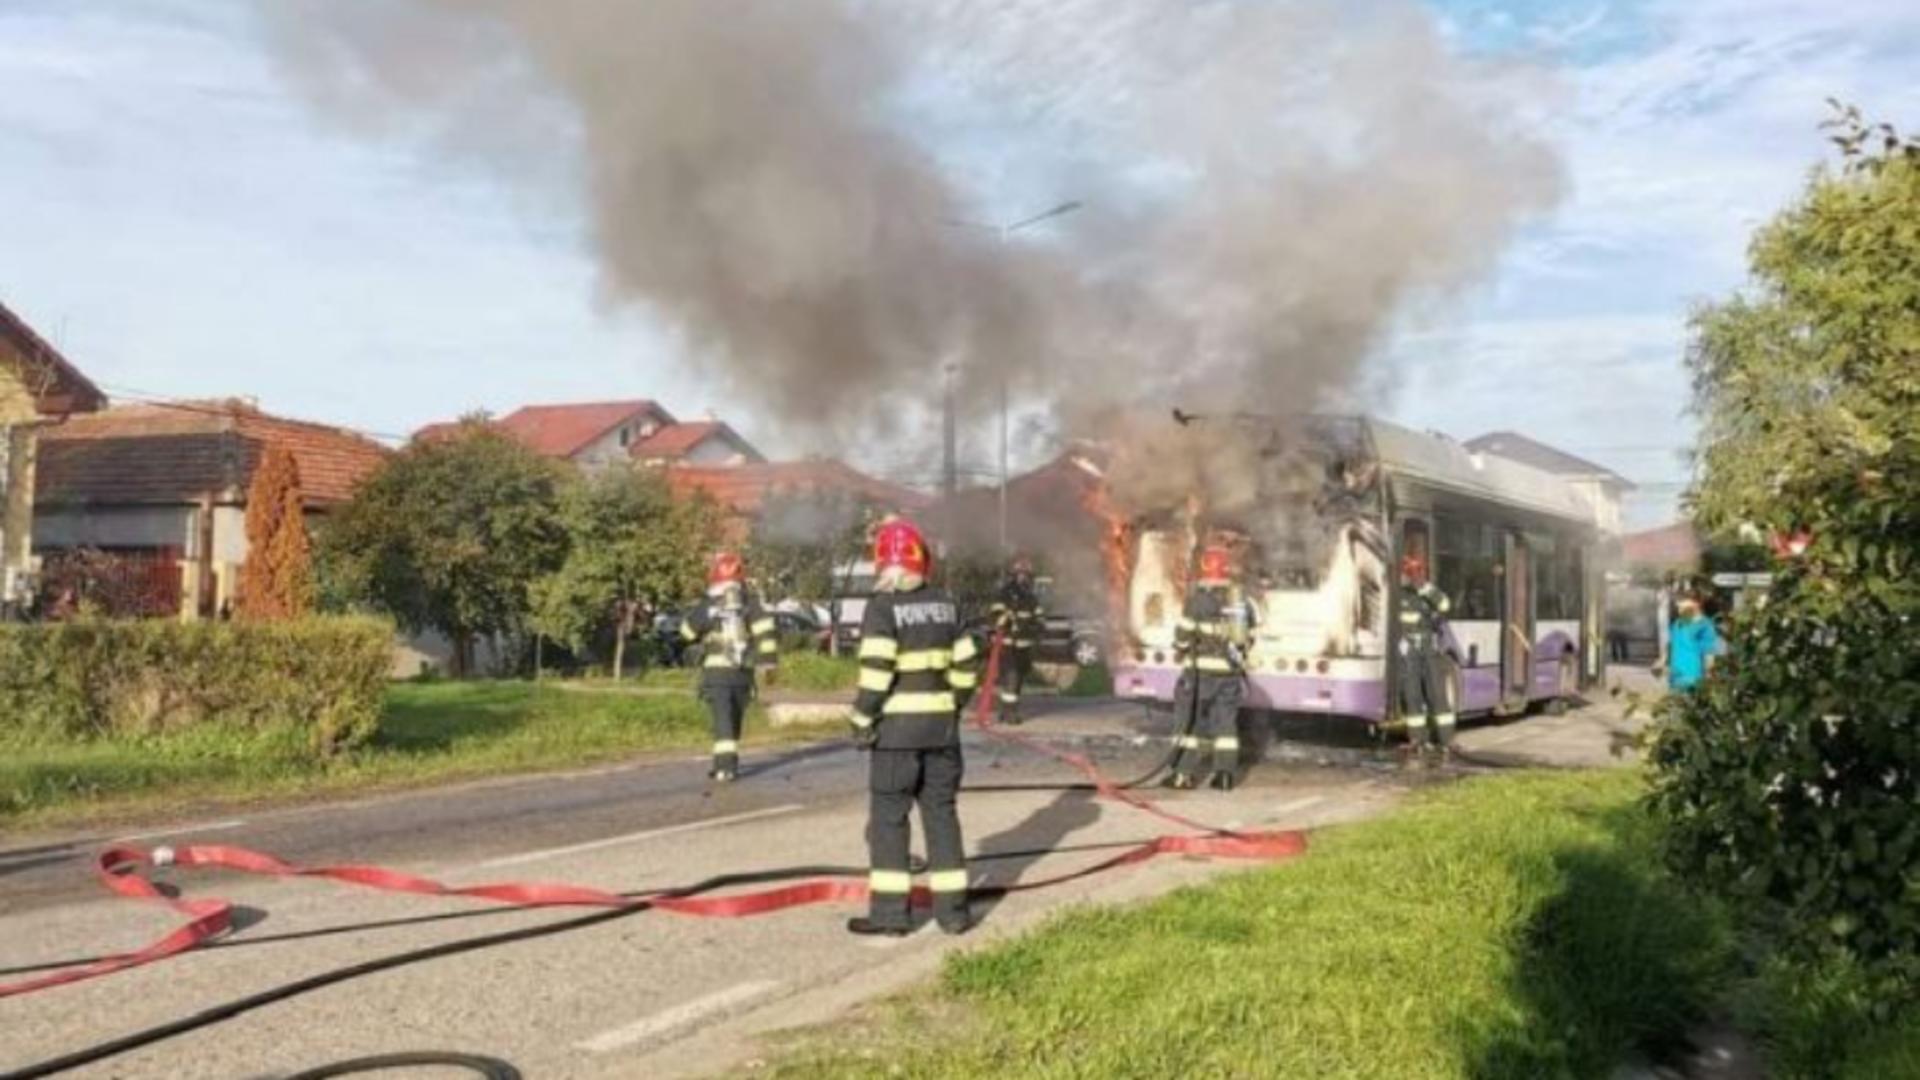 Panică pe străzile din Timișoara. Un troleibuz a luat foc în mers. Pasagerii s-au evacuat și au sunat la 112